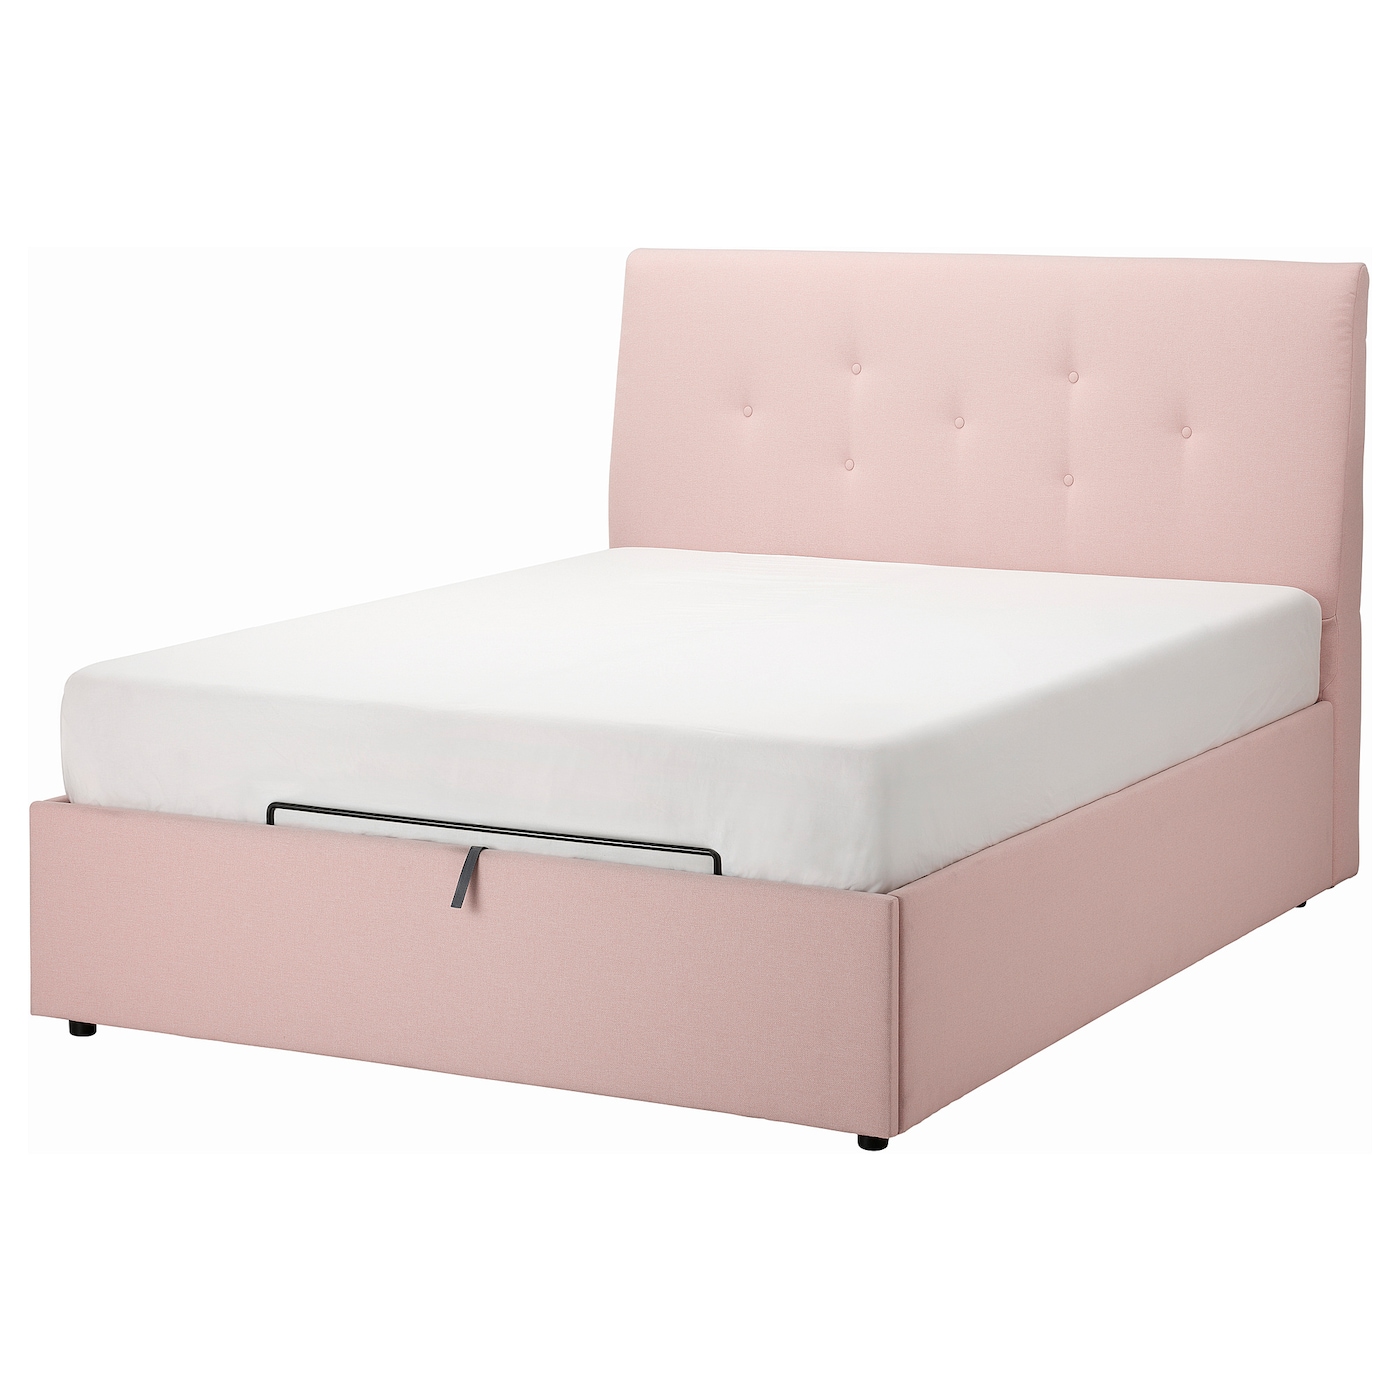 Кровать с местом для хранения  - IKEA IDANÄS/IDANAS, 200х140 см, бледно розовая, ИДАНЭС ИКЕА